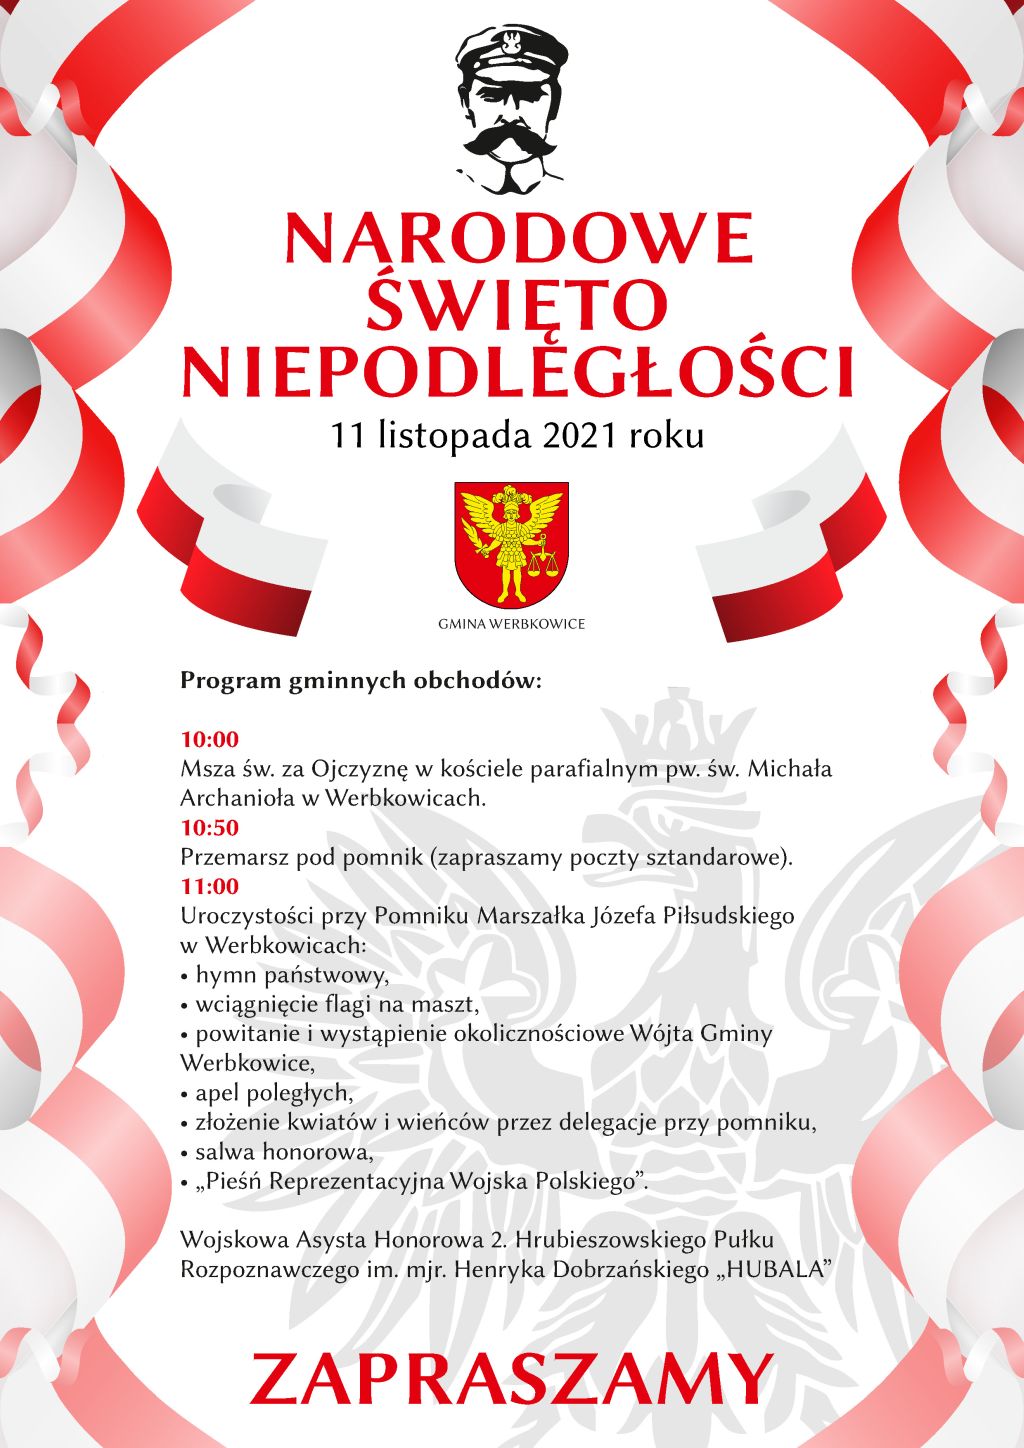 Narodowe Święto Niepodległości 11 listopada 2021 r. w Gminie Werbkowice - program obchodów